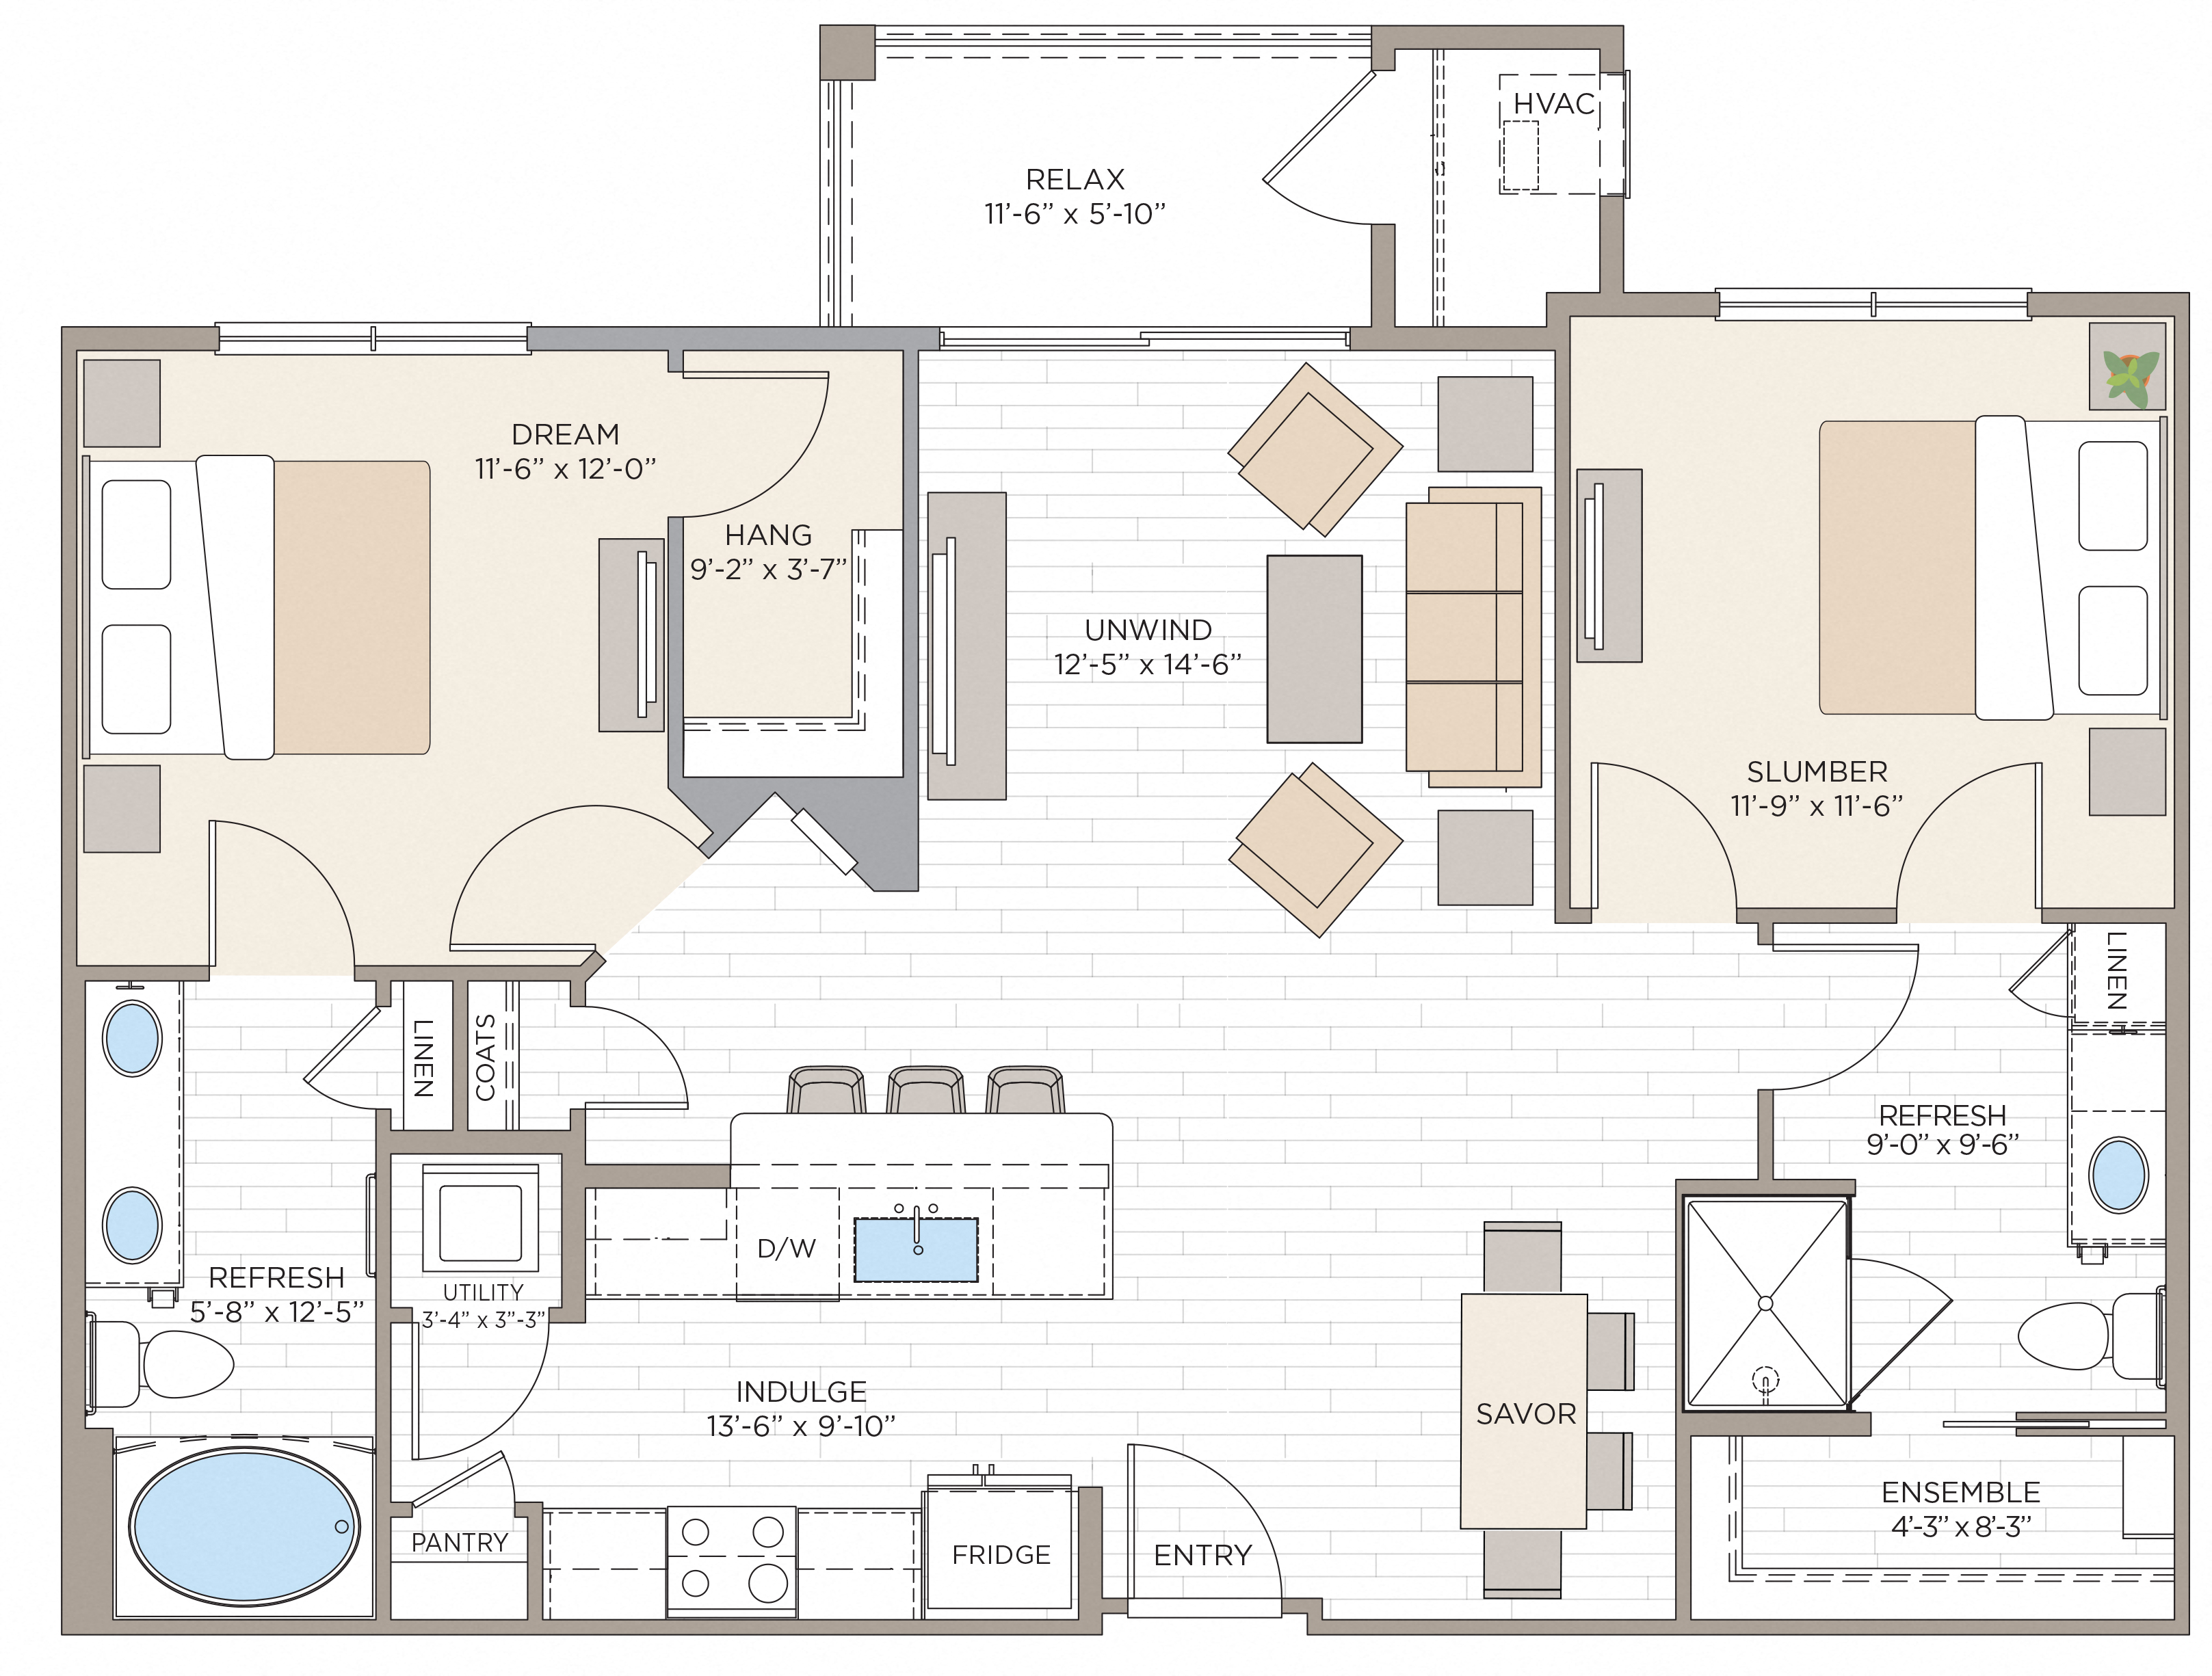 Floorplan for Apartment #14113, 2 bedroom unit at Halstead Maynard Crossing